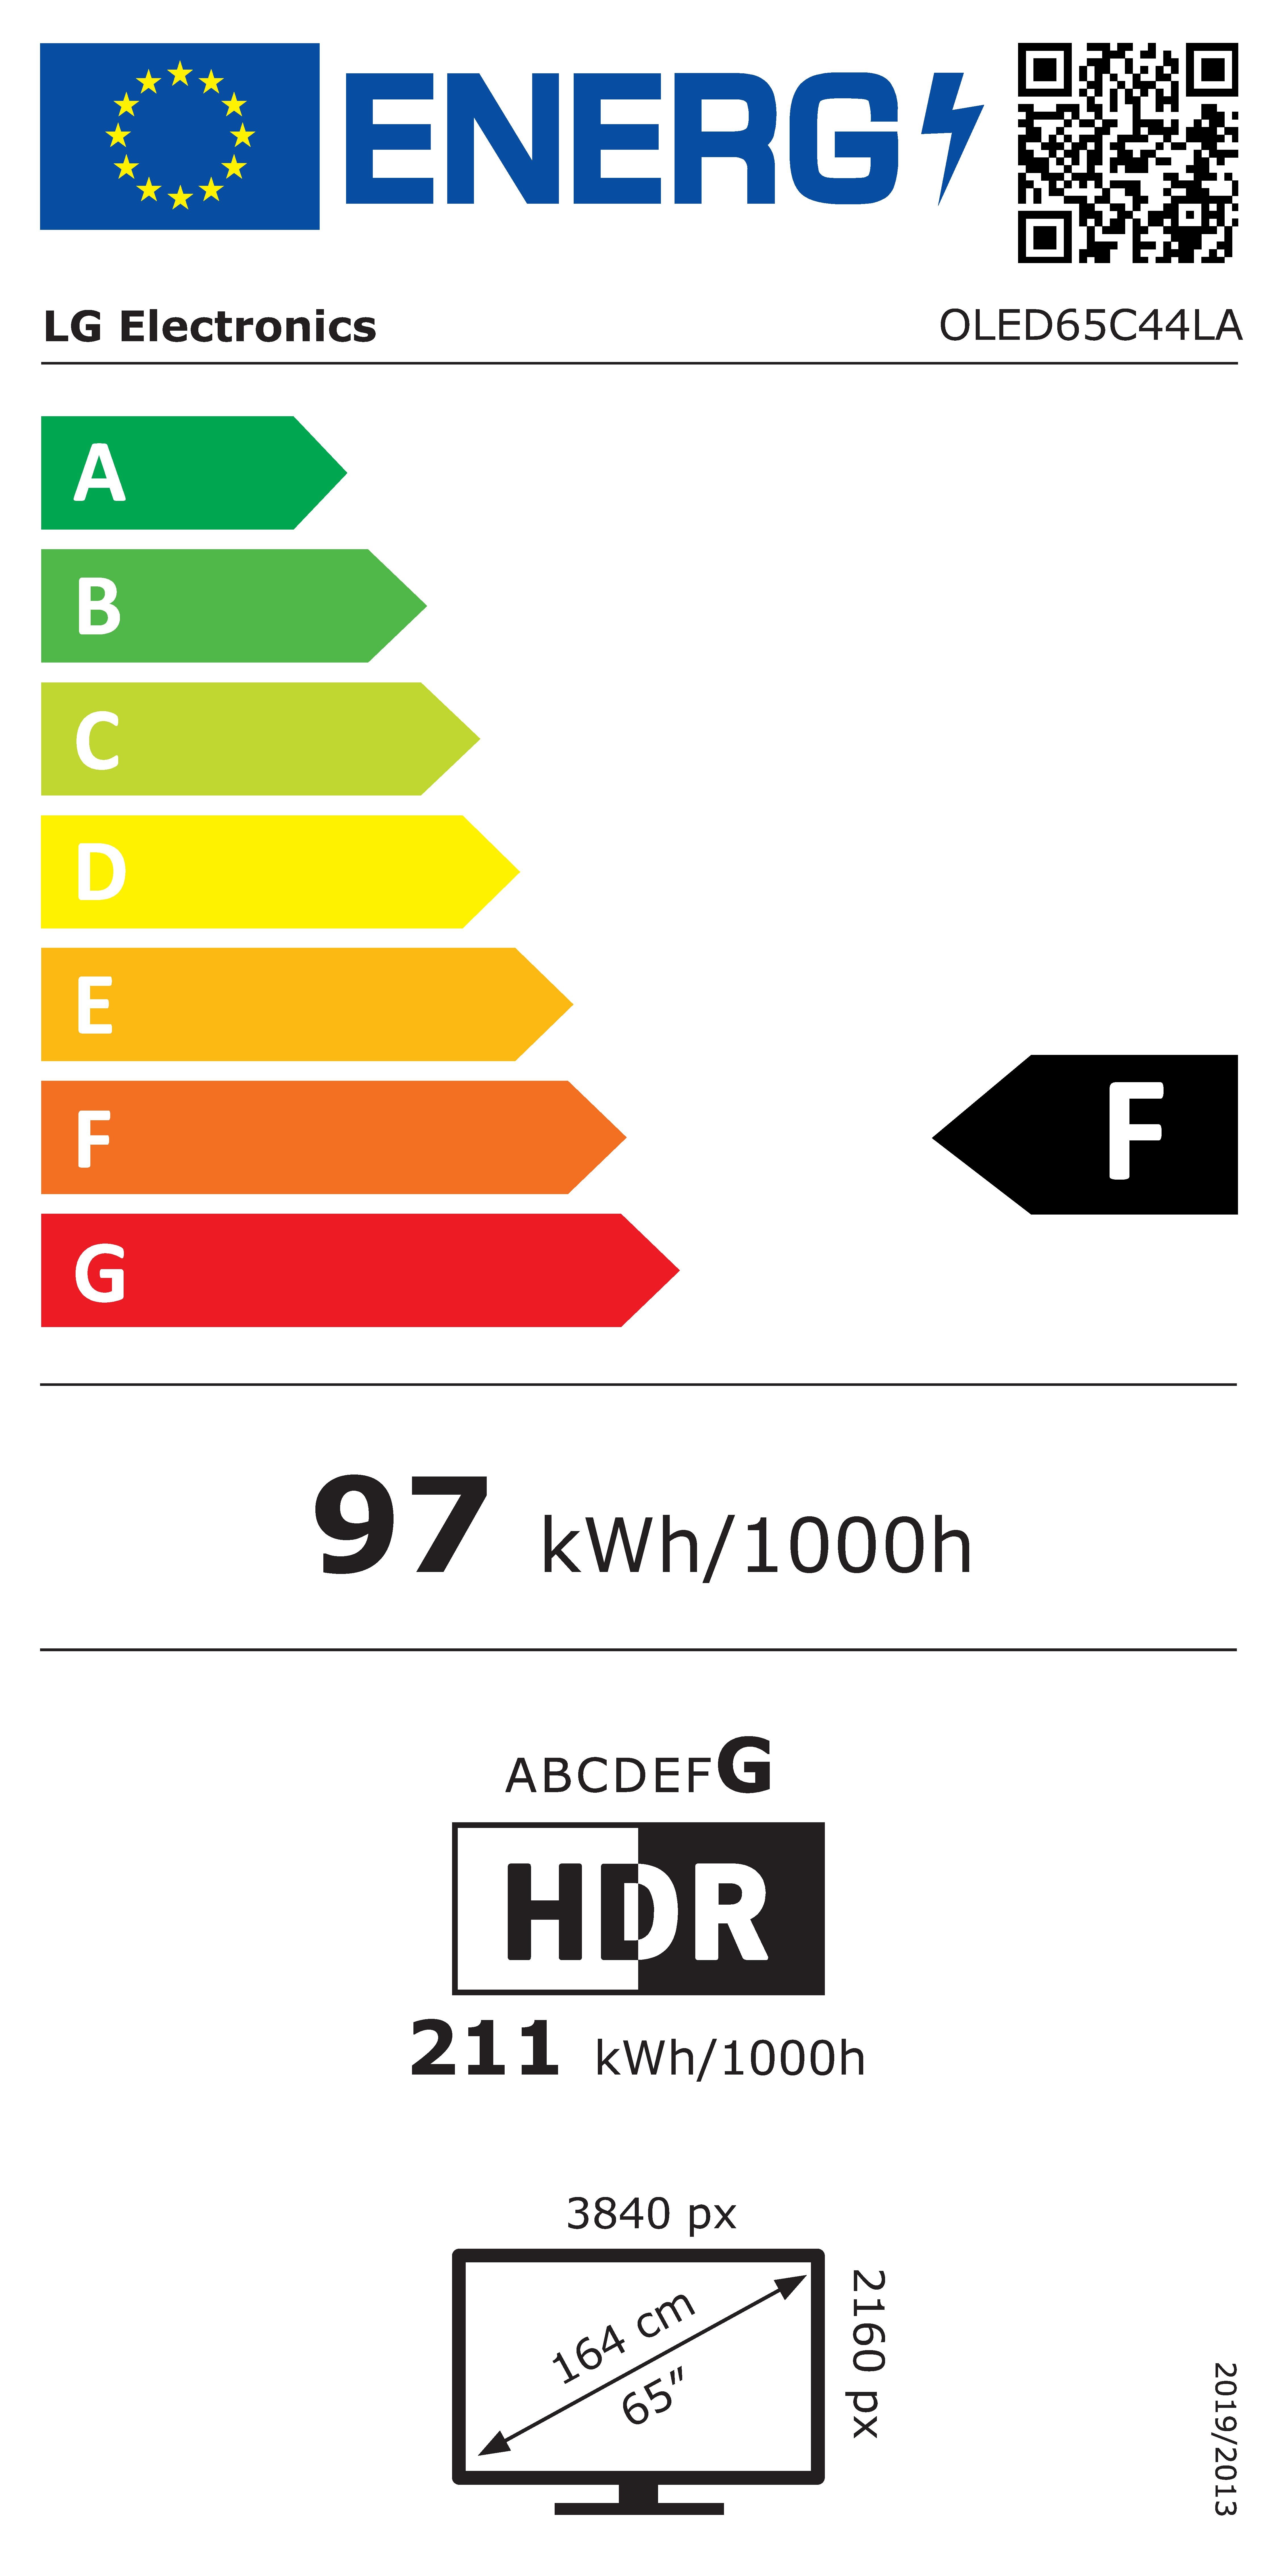 Etiqueta de Eficiencia Energética - OLED65C44LA